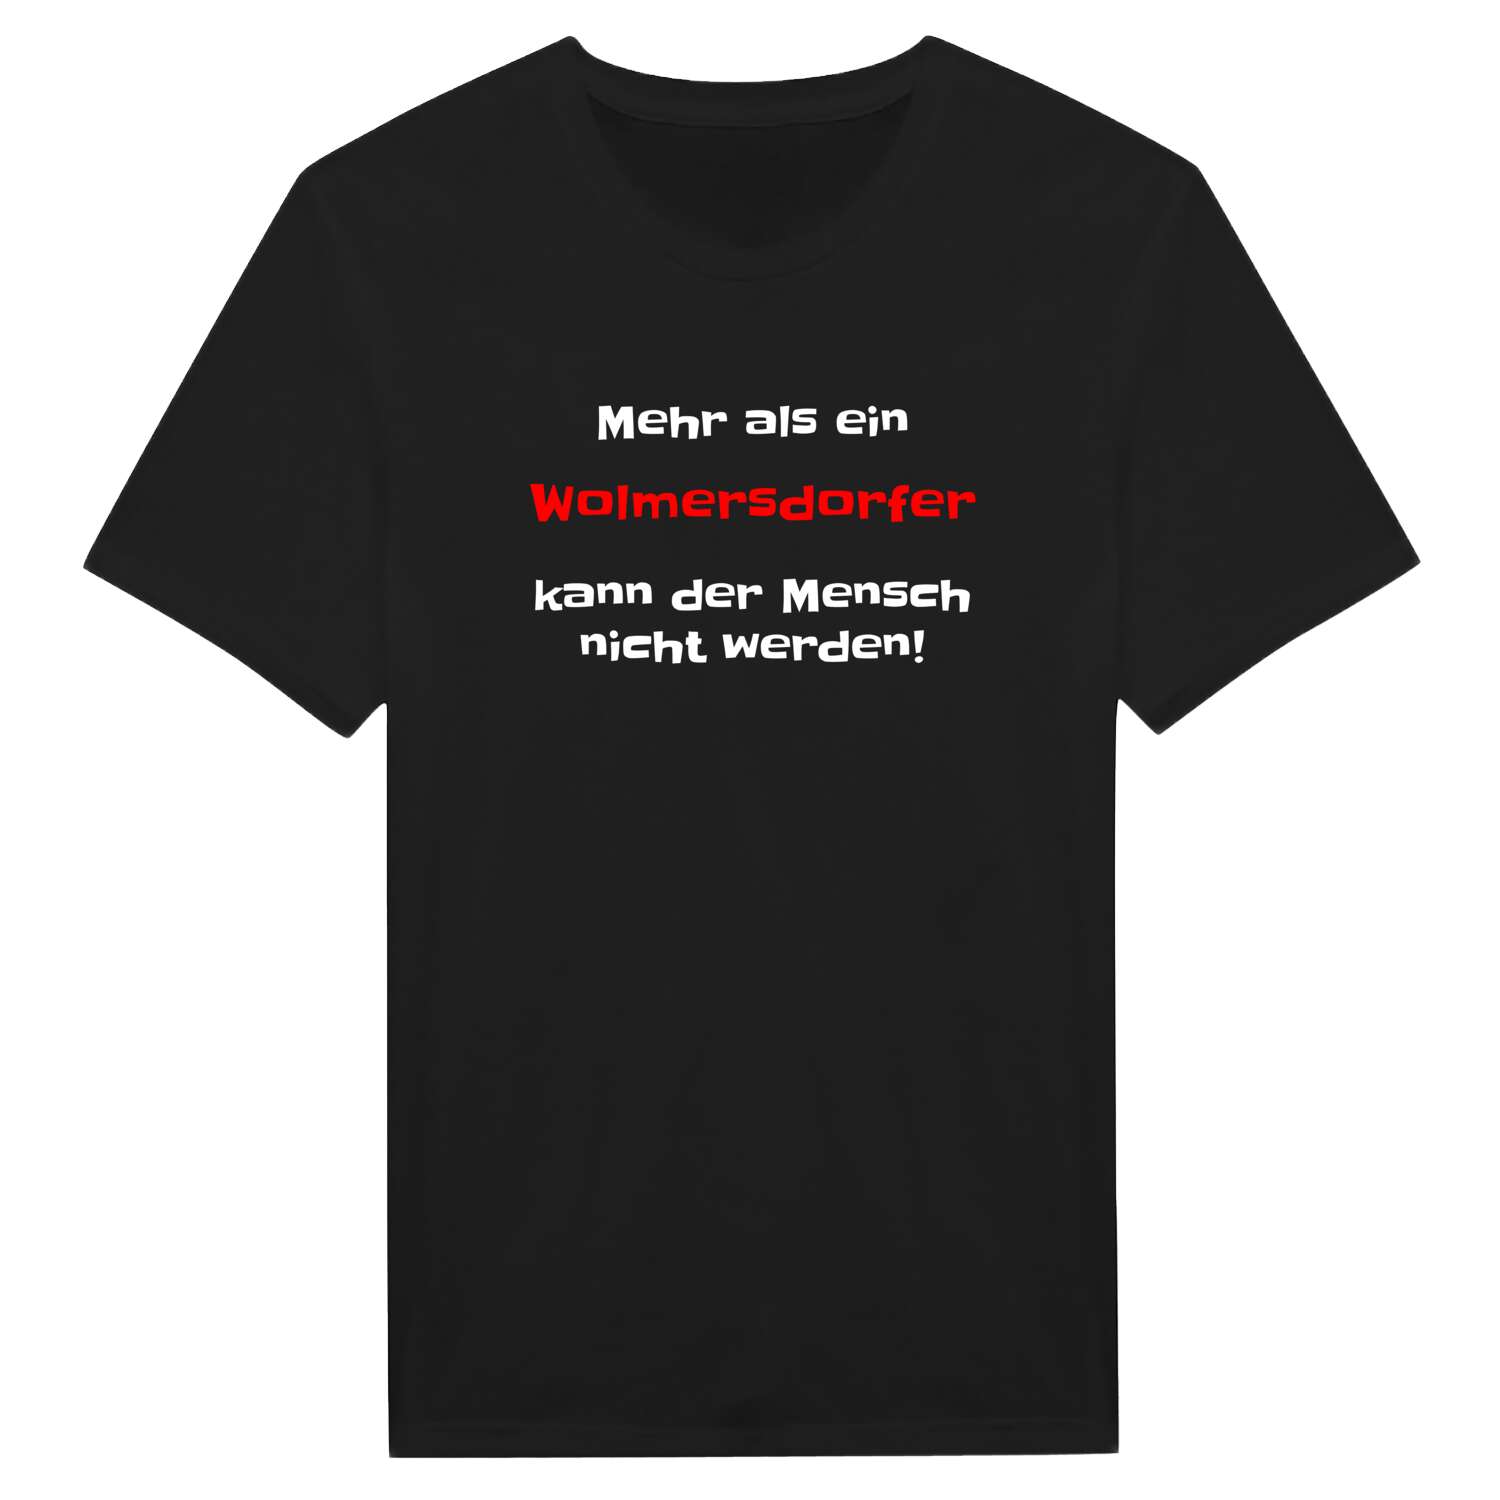 Wolmersdorf T-Shirt »Mehr als ein«